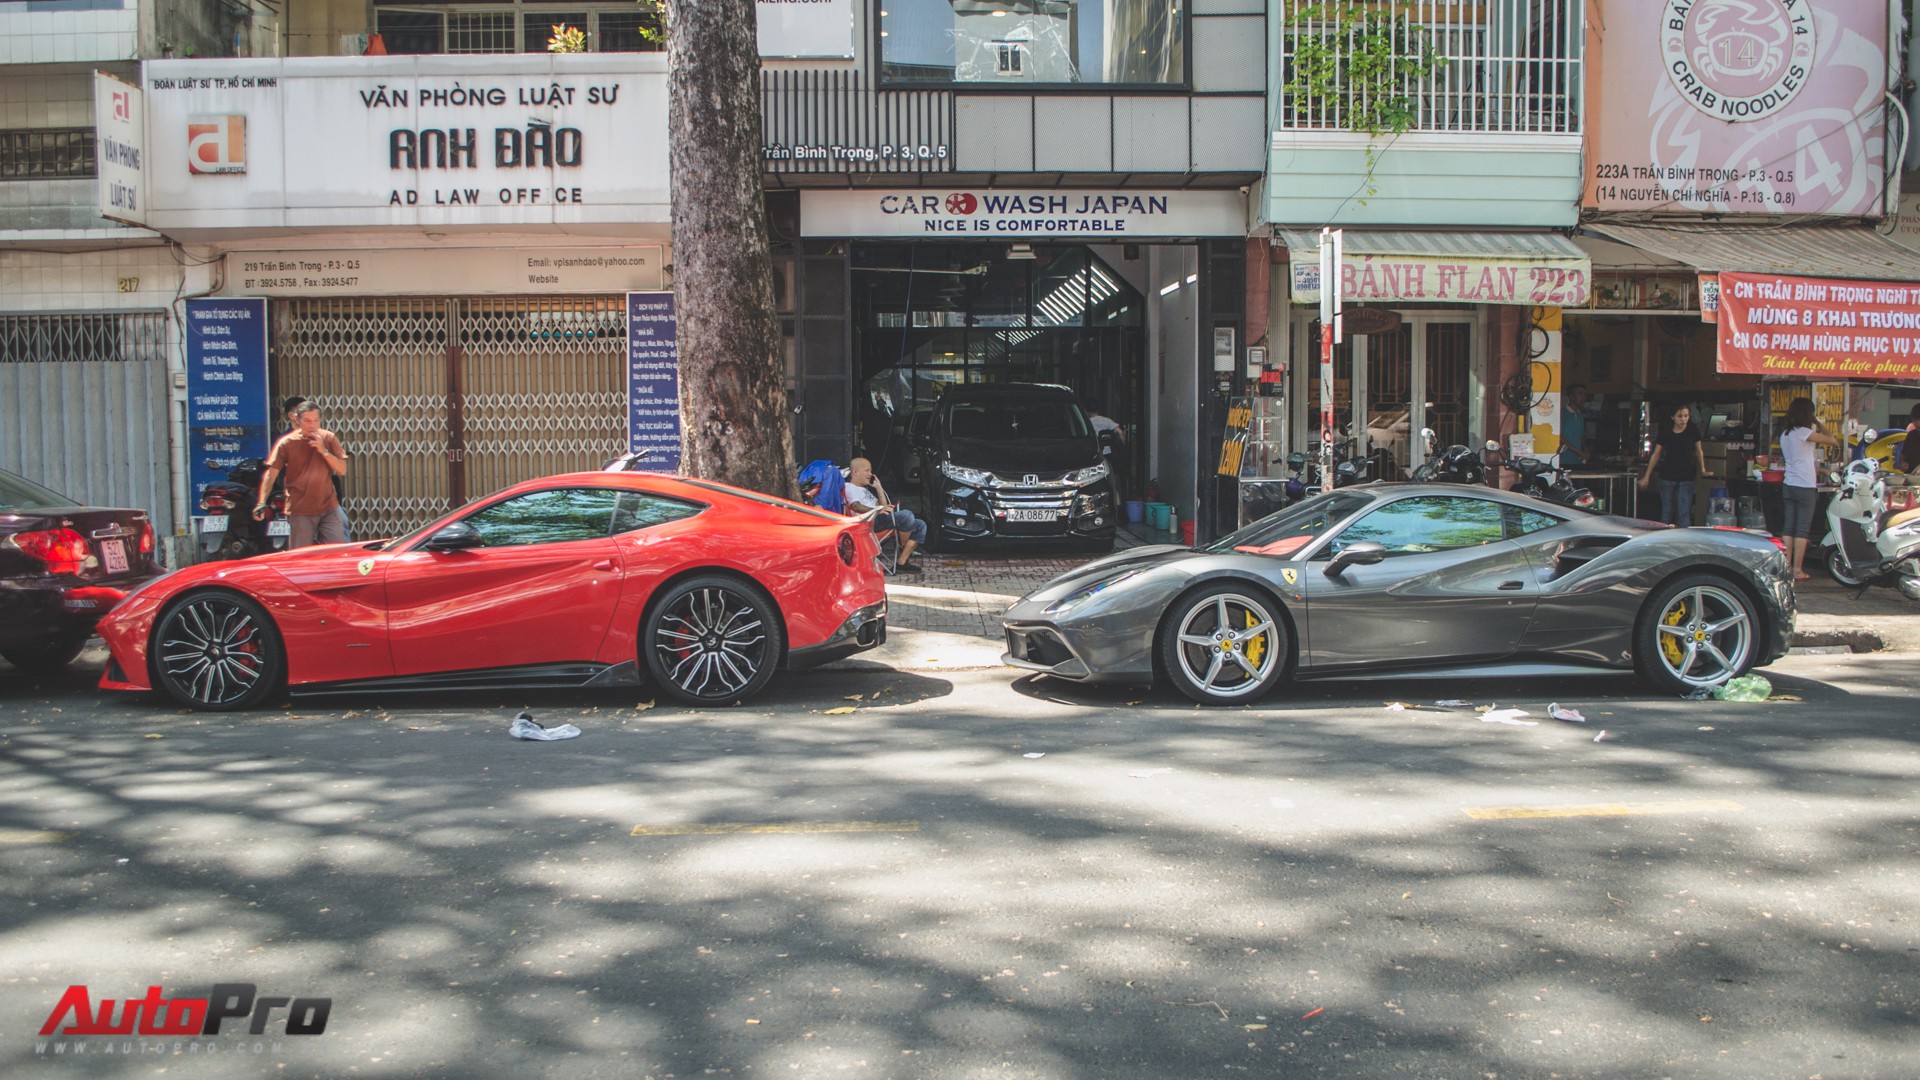 Những cảnh quay về siêu xe Ferrari đầy mê hoặc và hoành tráng sẽ khiến cho bạn không khỏi ngoái nhìn và thèm muốn. Hãy xem người ta điều khiển những chiếc siêu xe tốc độ này như thế nào nhé!